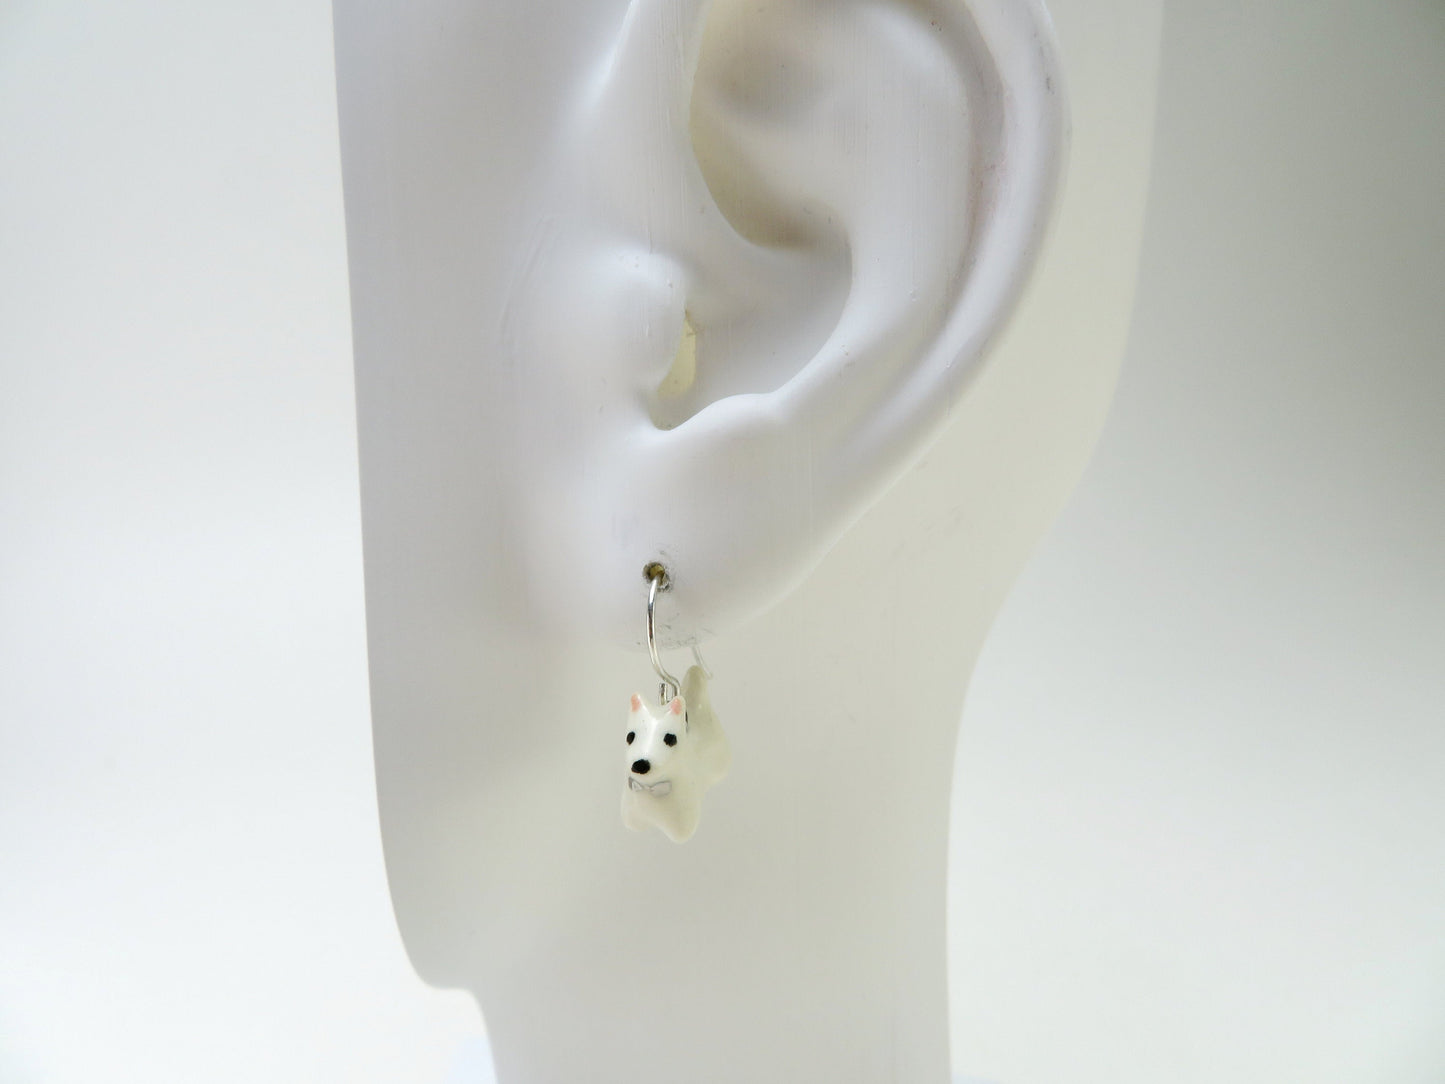 White Terrier Dangle Earrings